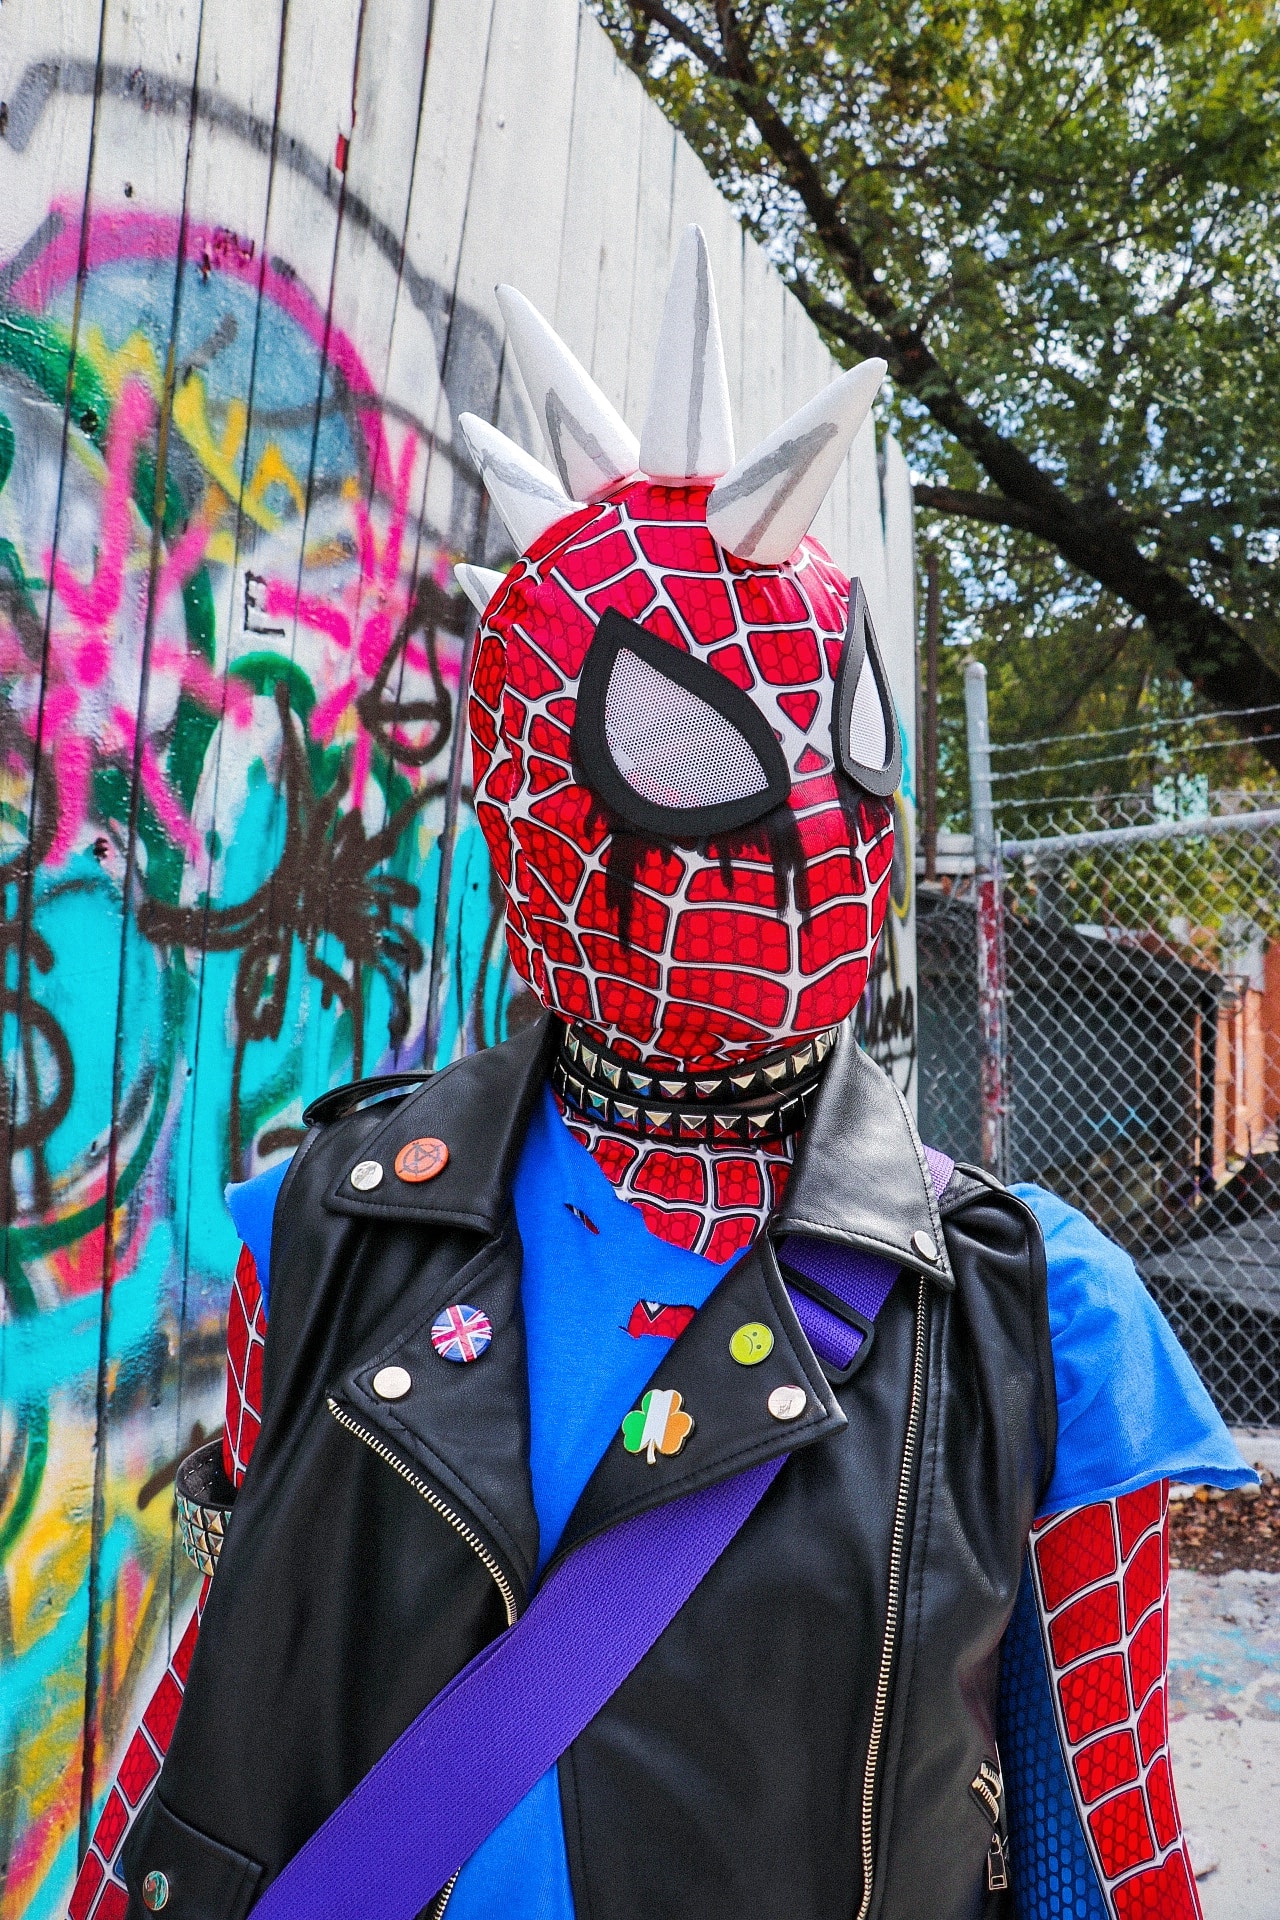 DIY Punk Spiderman costume